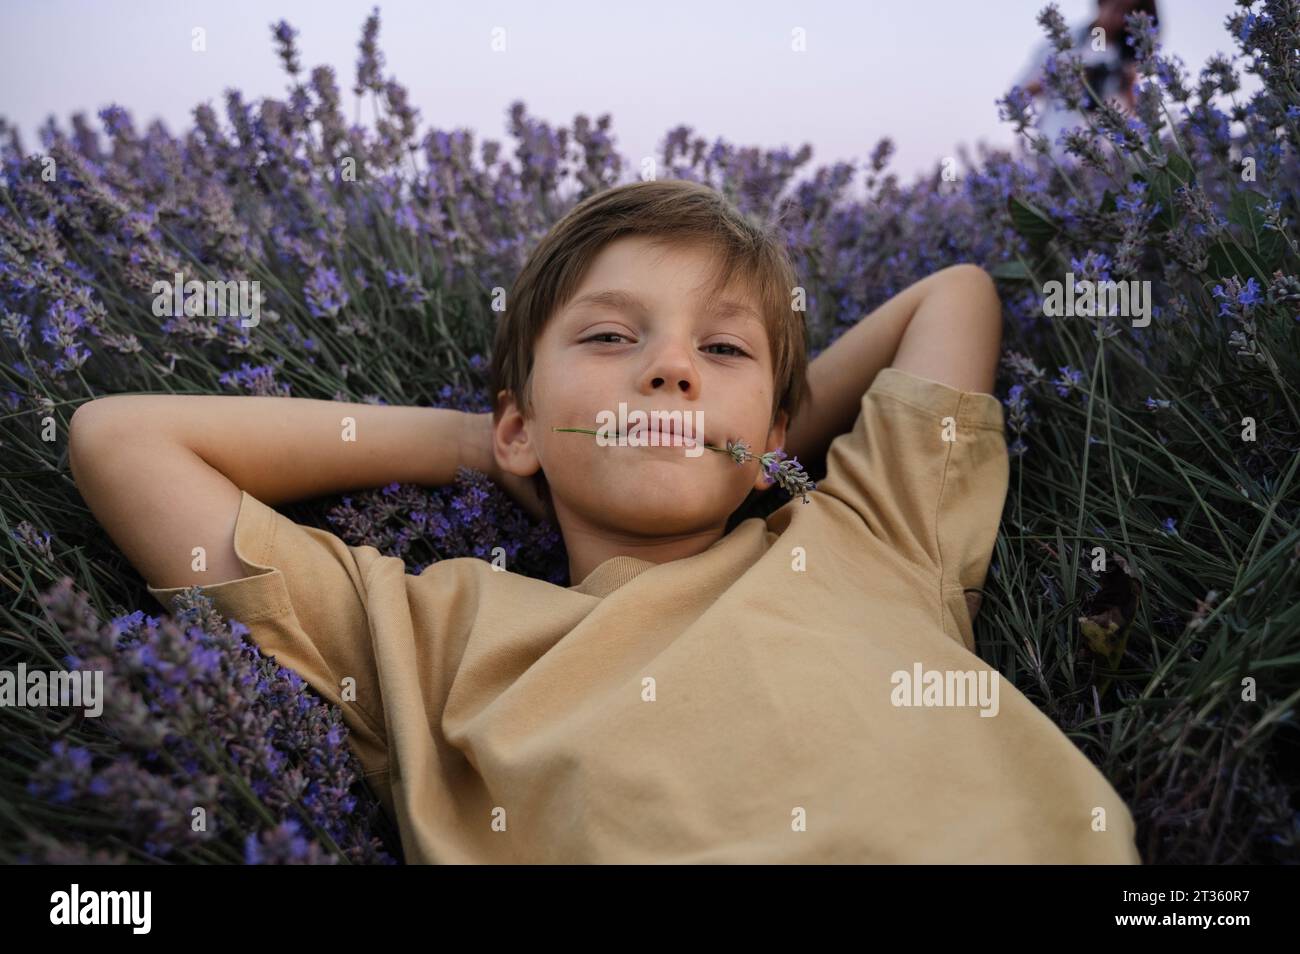 Junge, der Lavendelblume im Mund hält Stockfoto